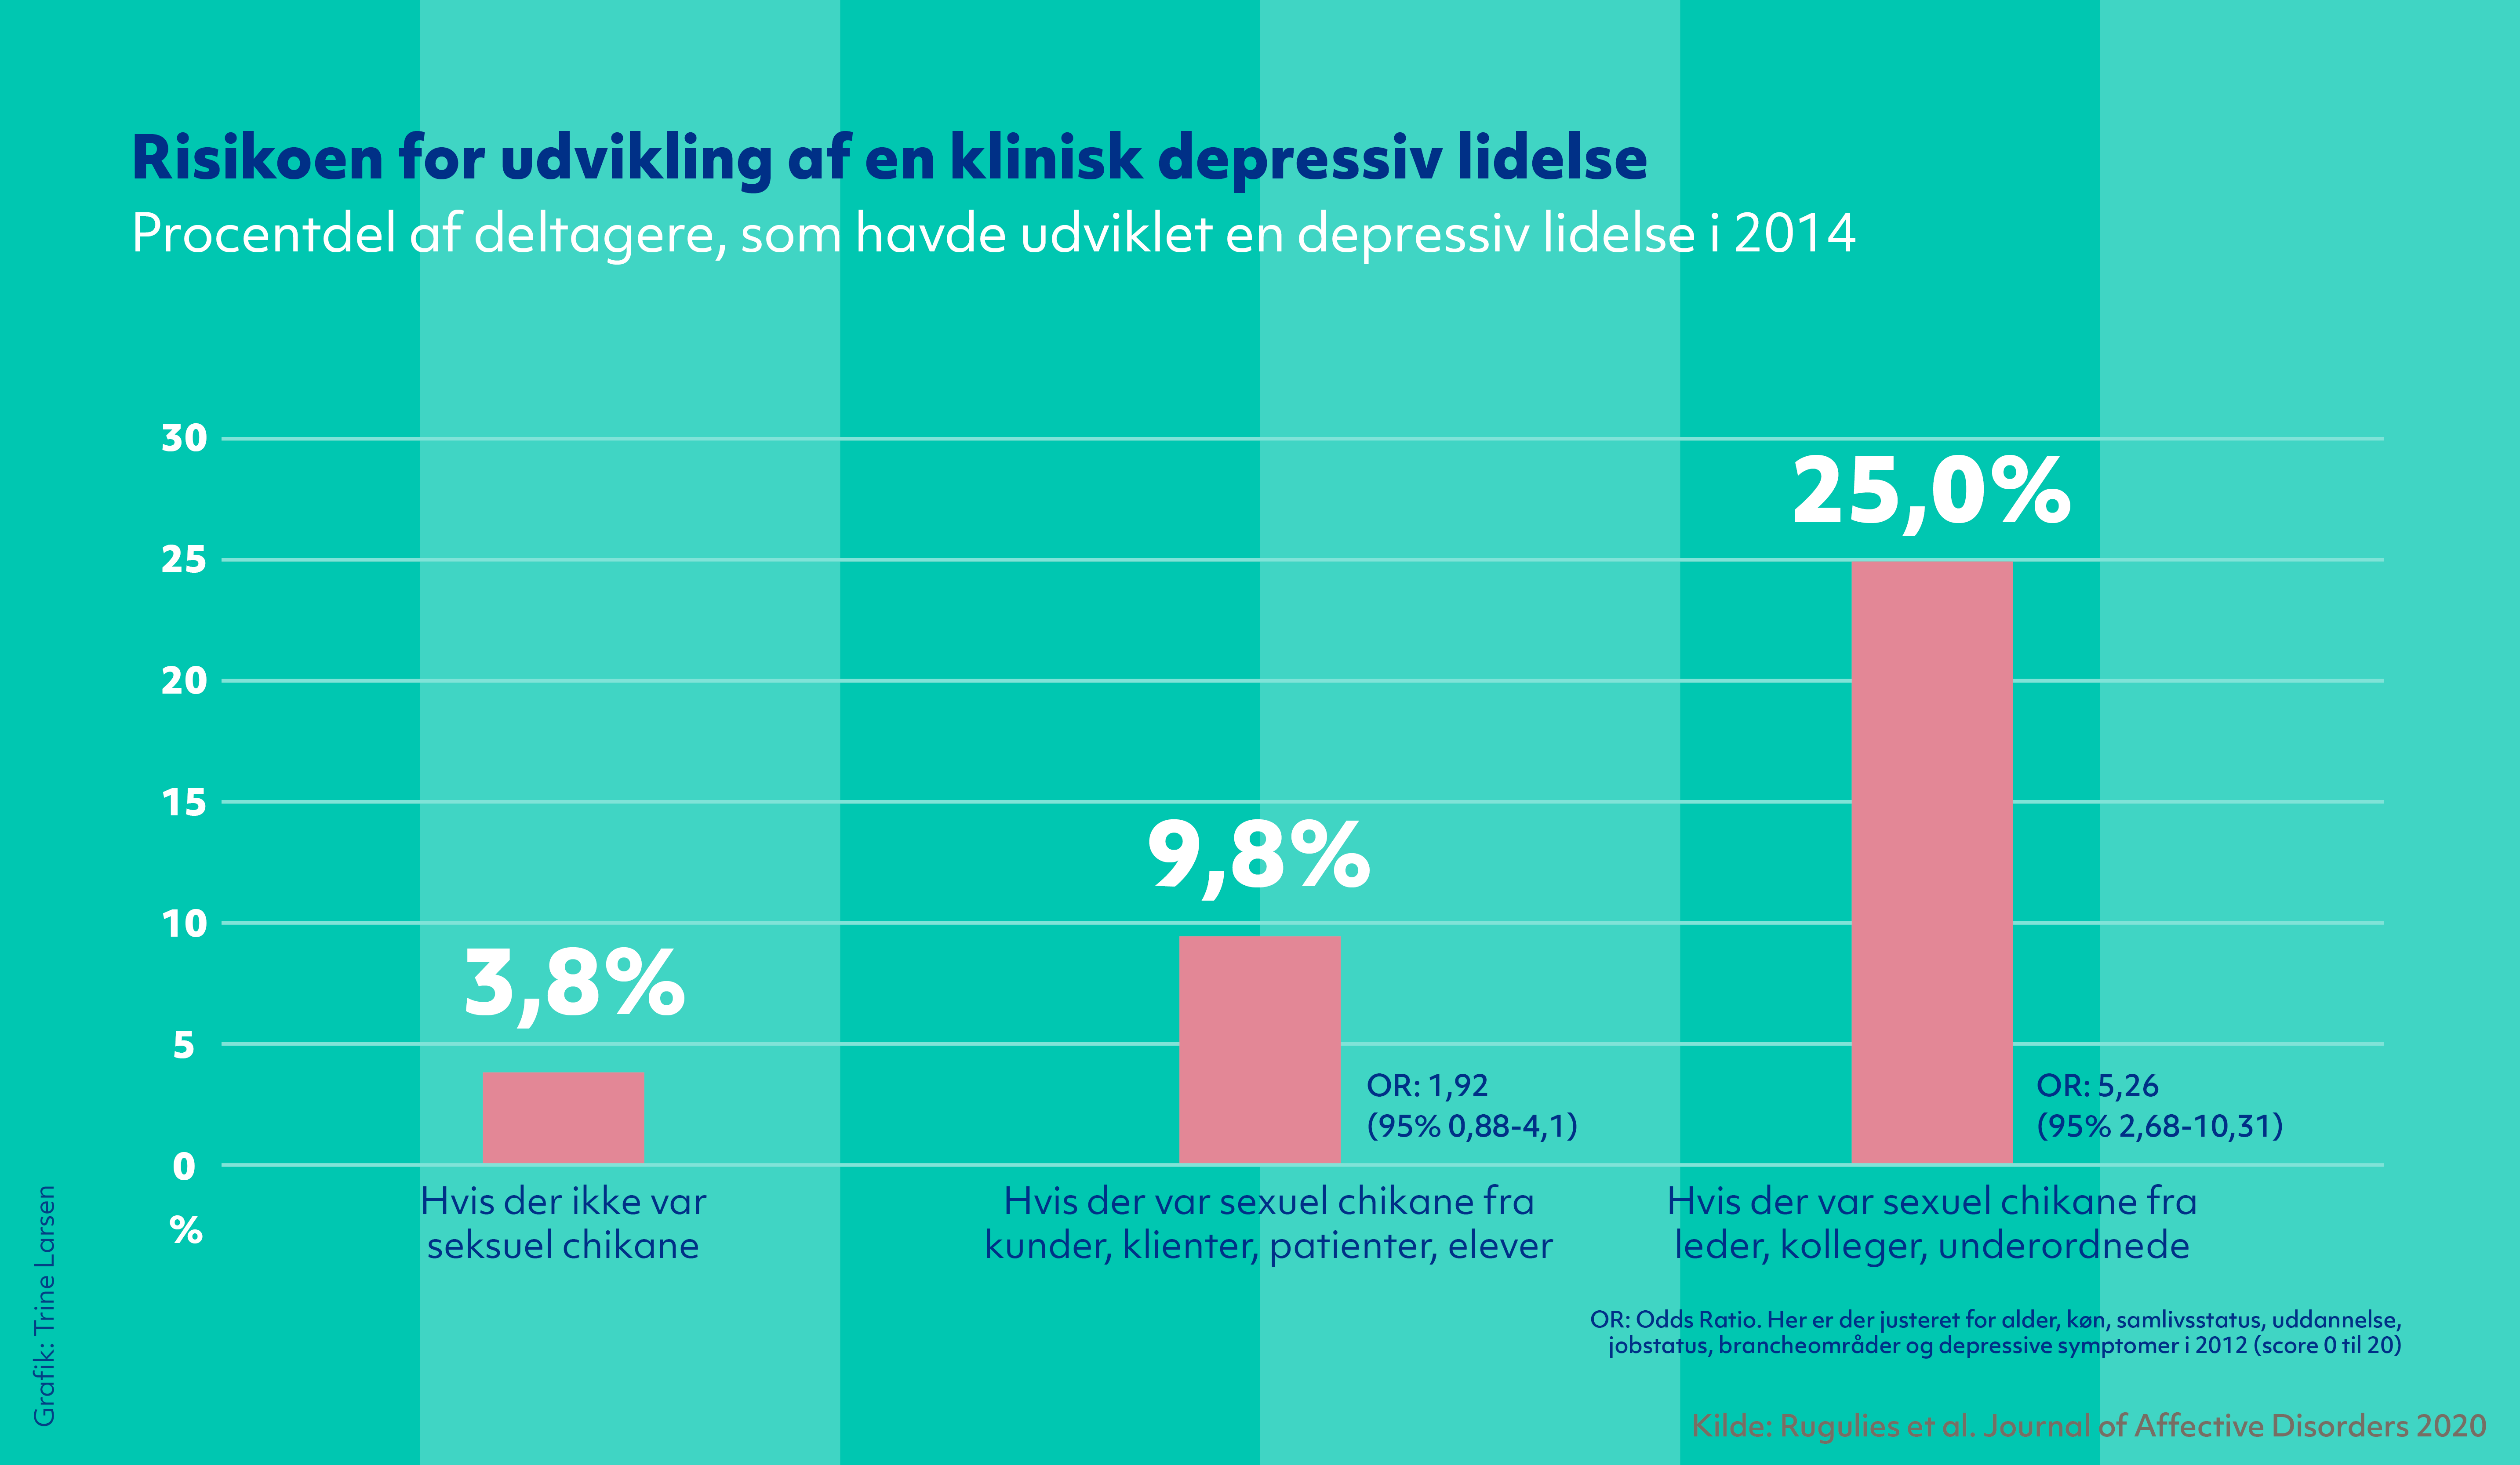 Risikoen for udvikling af en klinisk depressiv lidelse. Figur der viser procentdelen af deltagere, som havde udviklet en depressiv lidelse i 2014. Kilde: Ruguliees et al. Journal of Affective Disorders 2020.